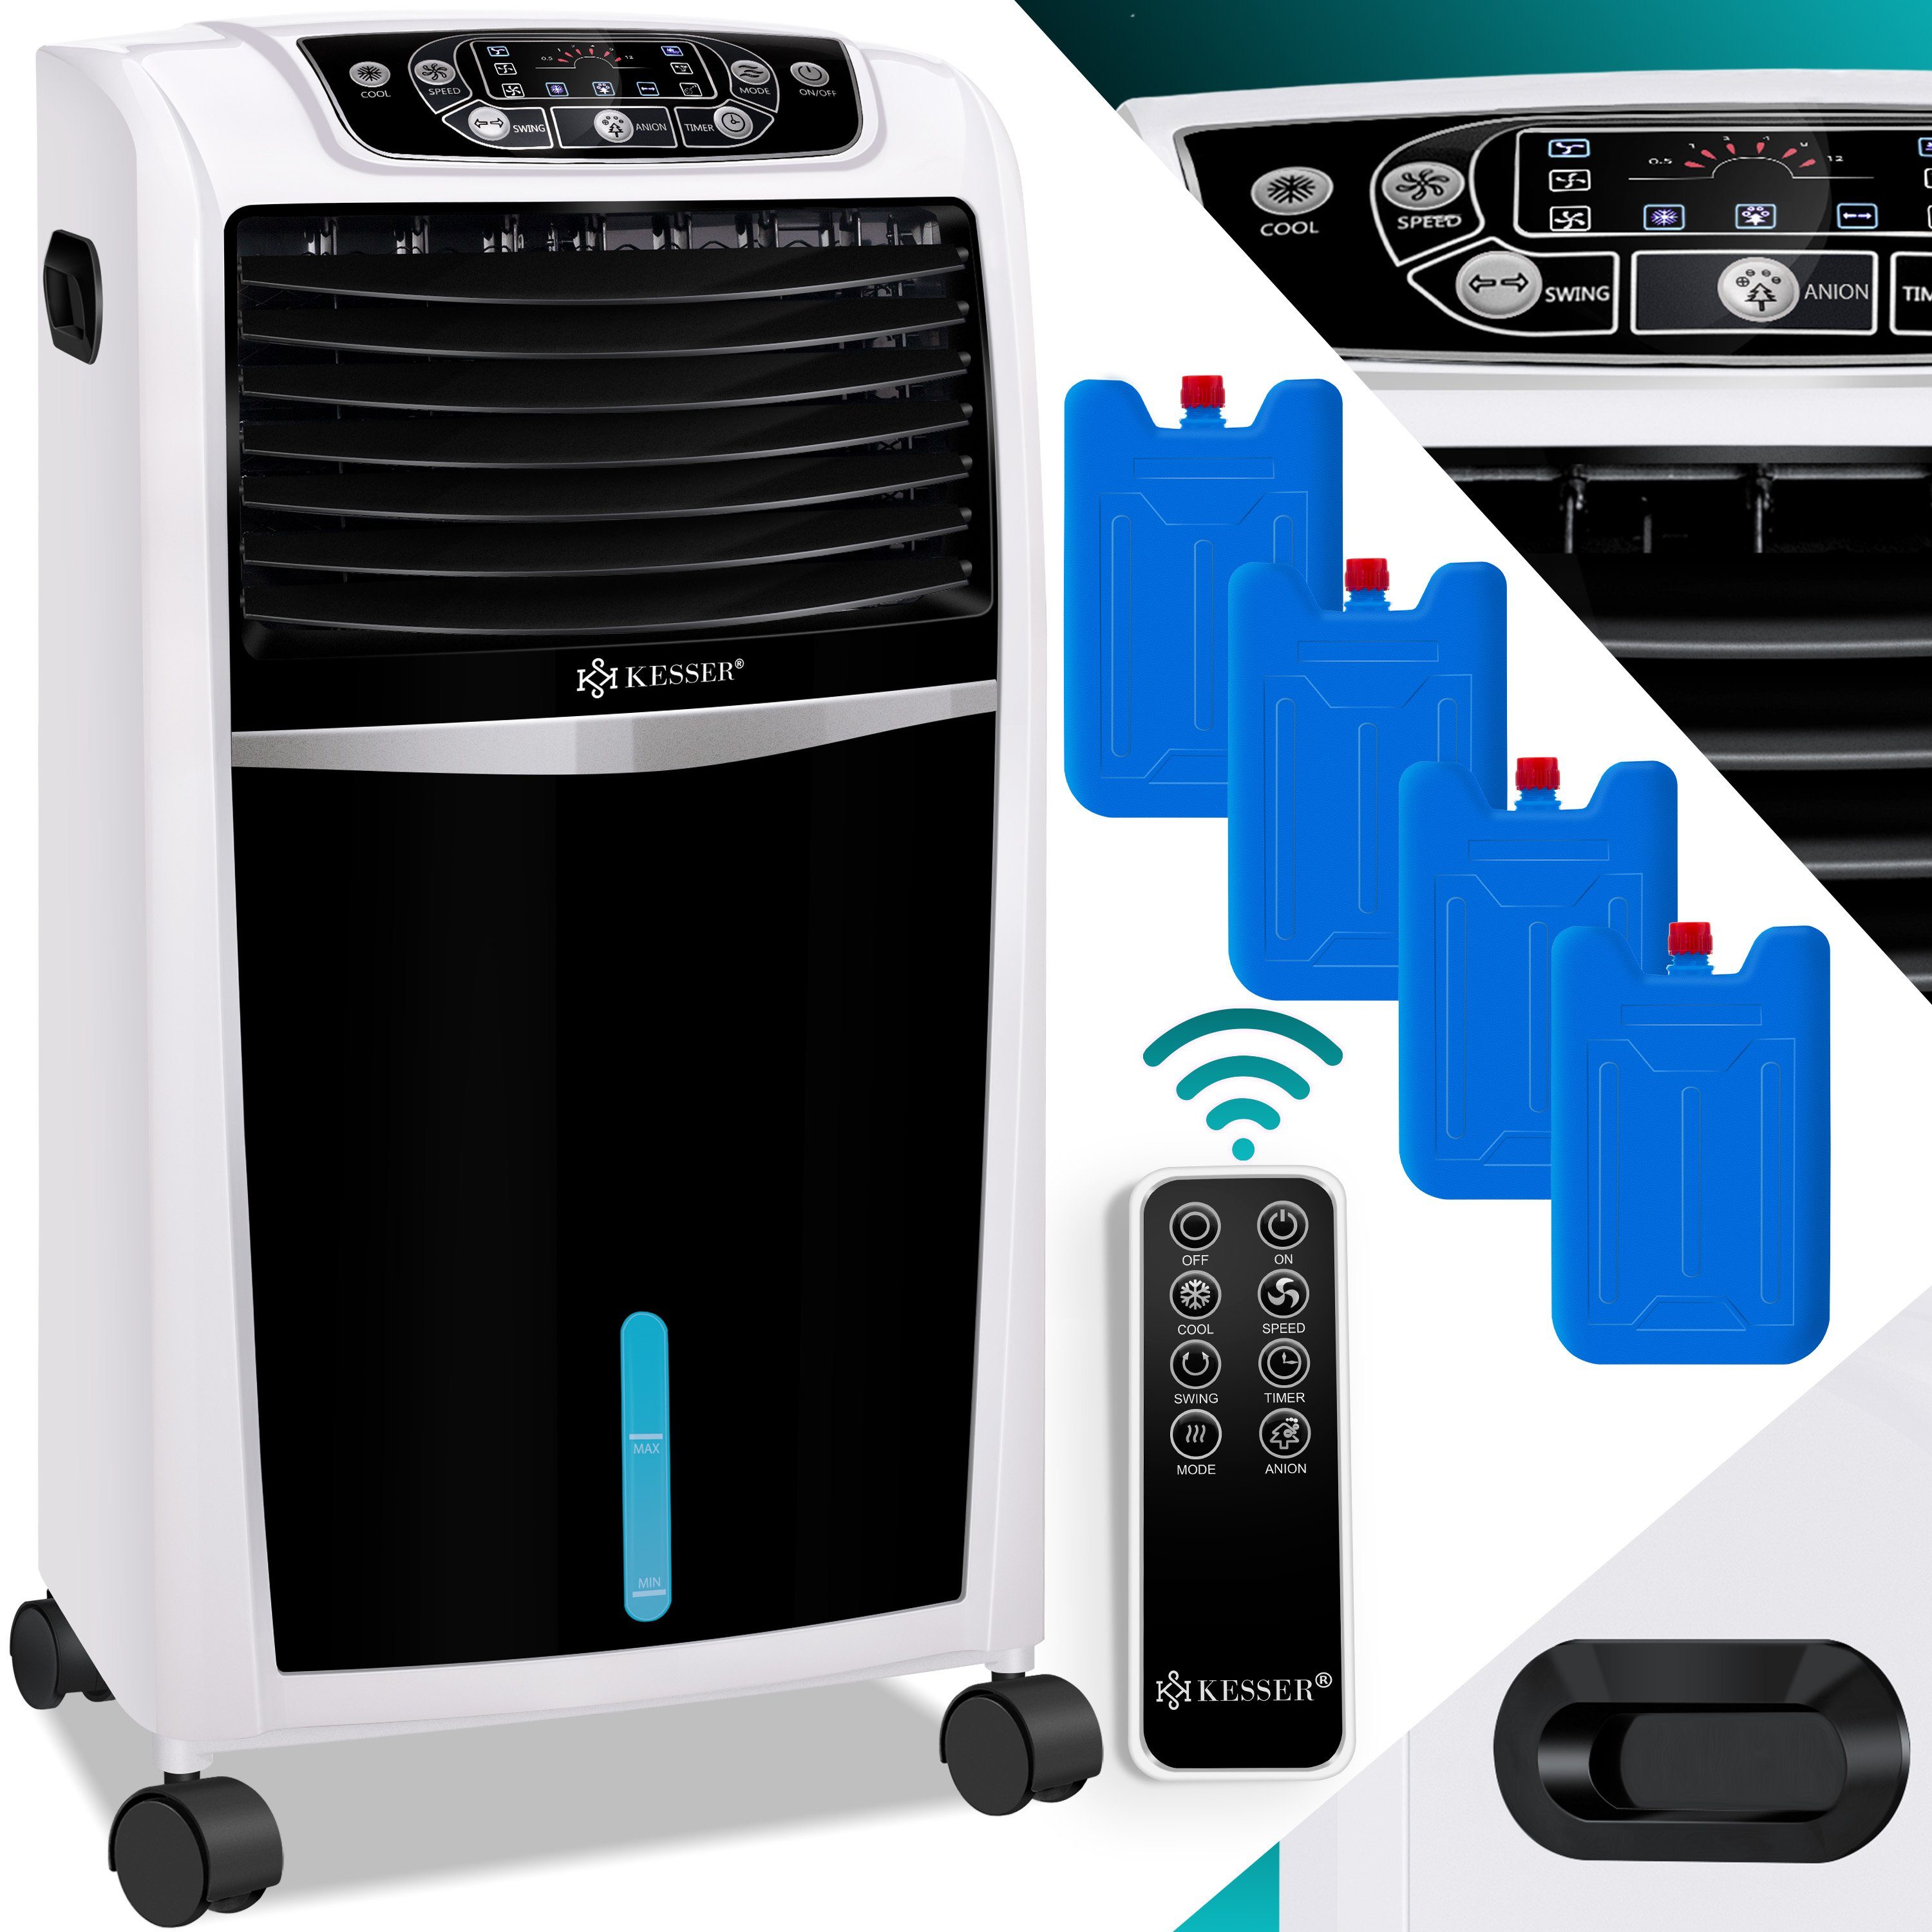 KESSER® 4in1 Mobile Klimaanlage Klimagerät mit Fernbedienung